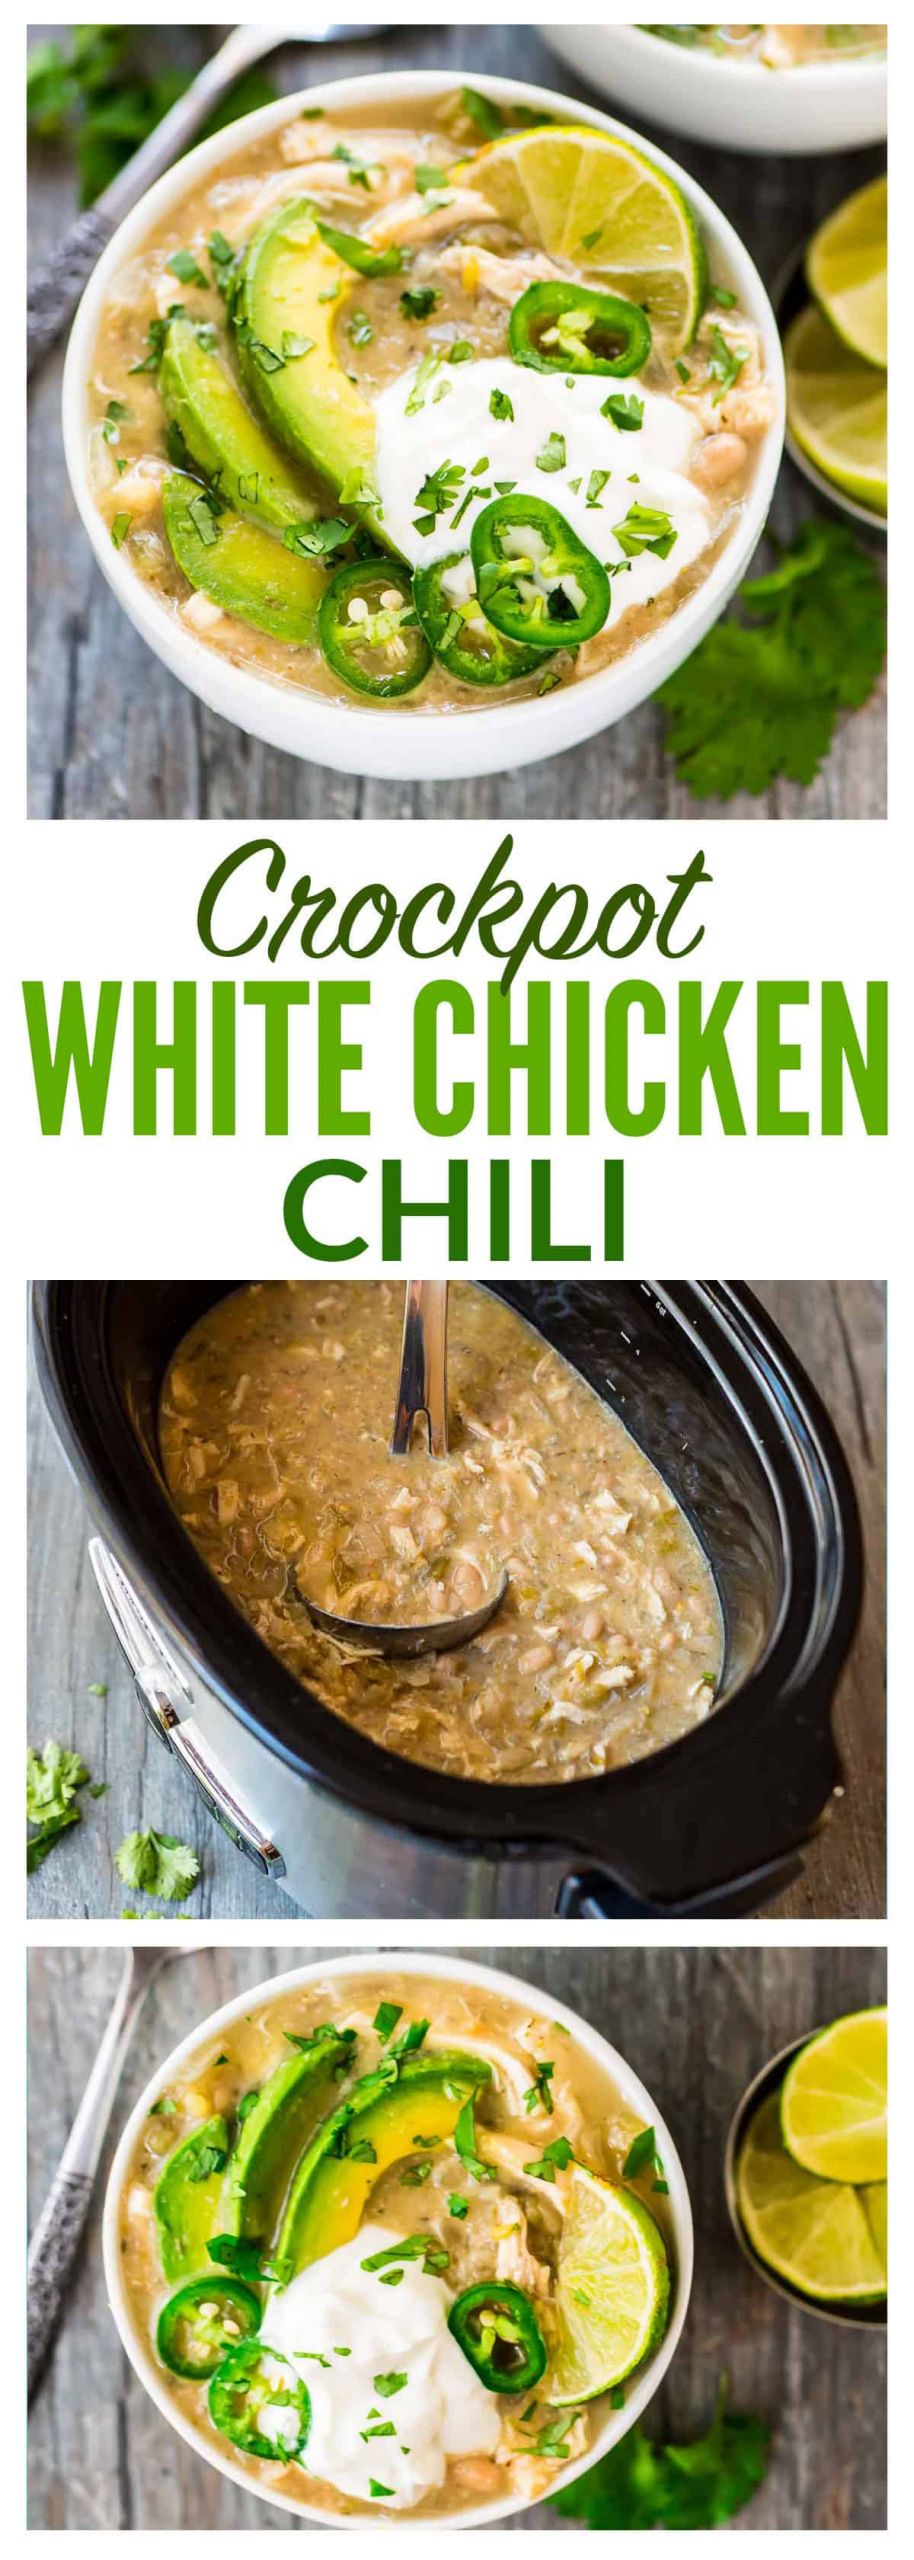 Crock Pot White Chicken Chili Recipe
 Crockpot White Chicken Chili